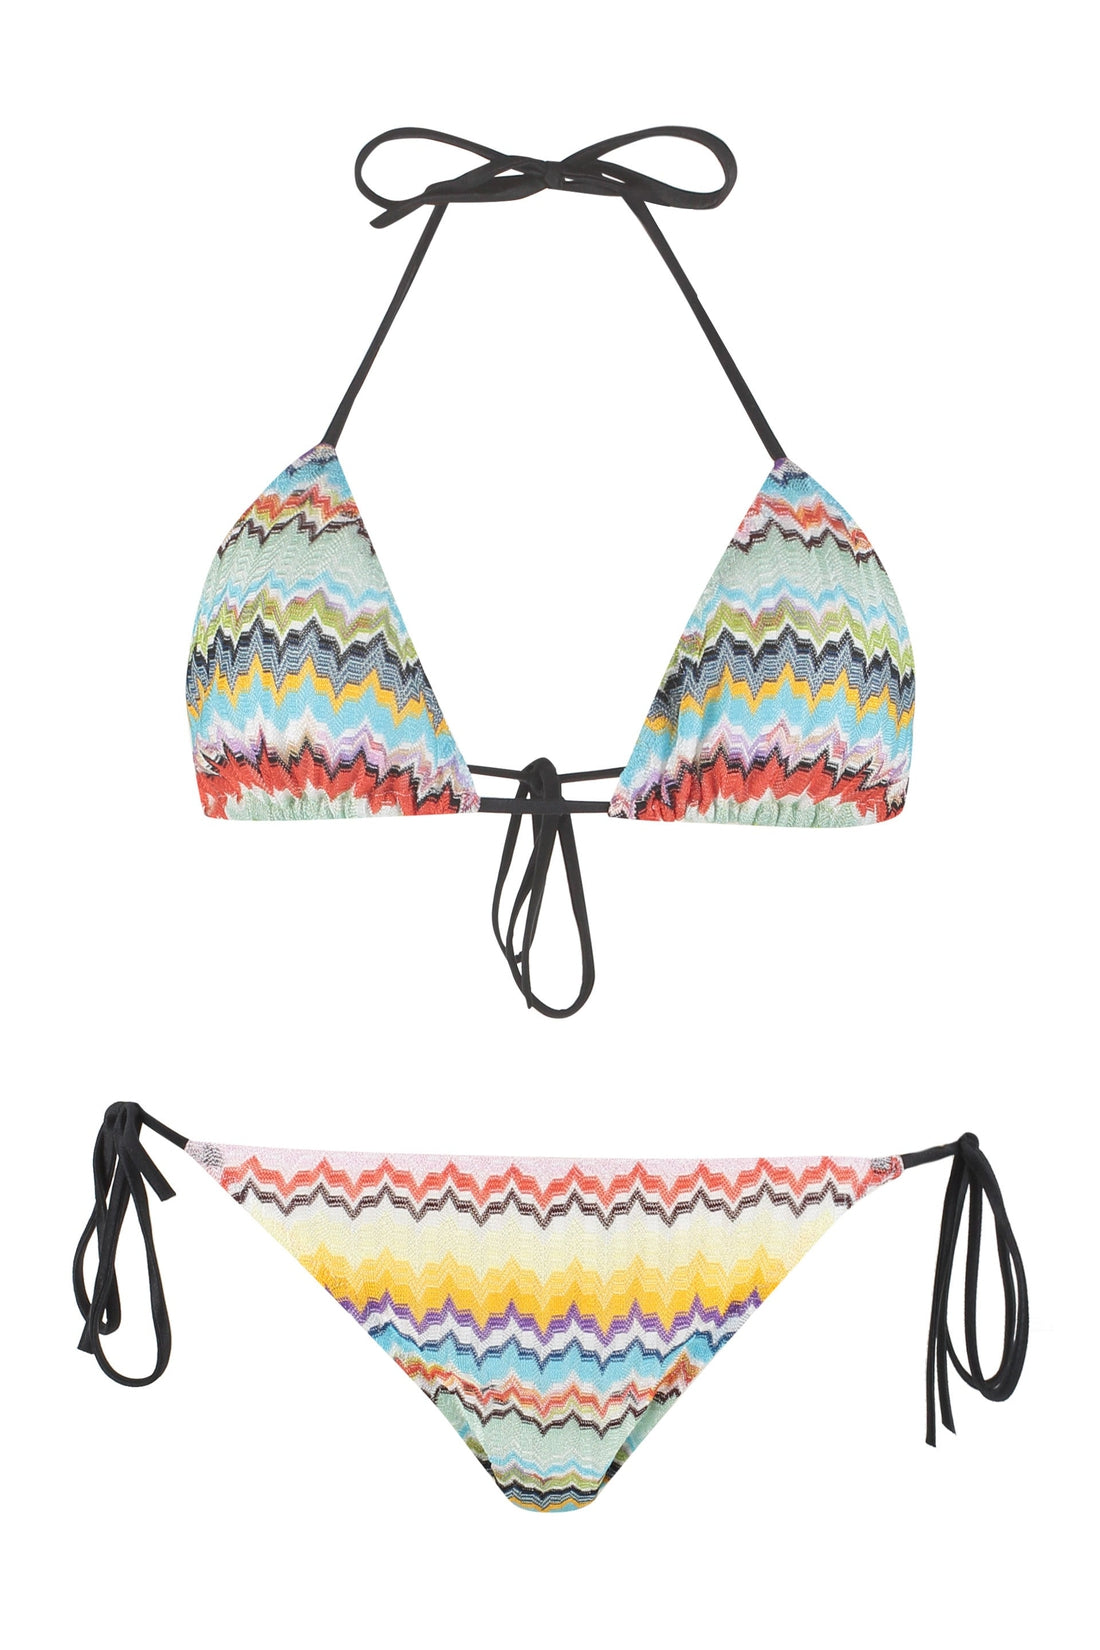 Missoni-OUTLET-SALE-Triangle bra bikini-ARCHIVIST